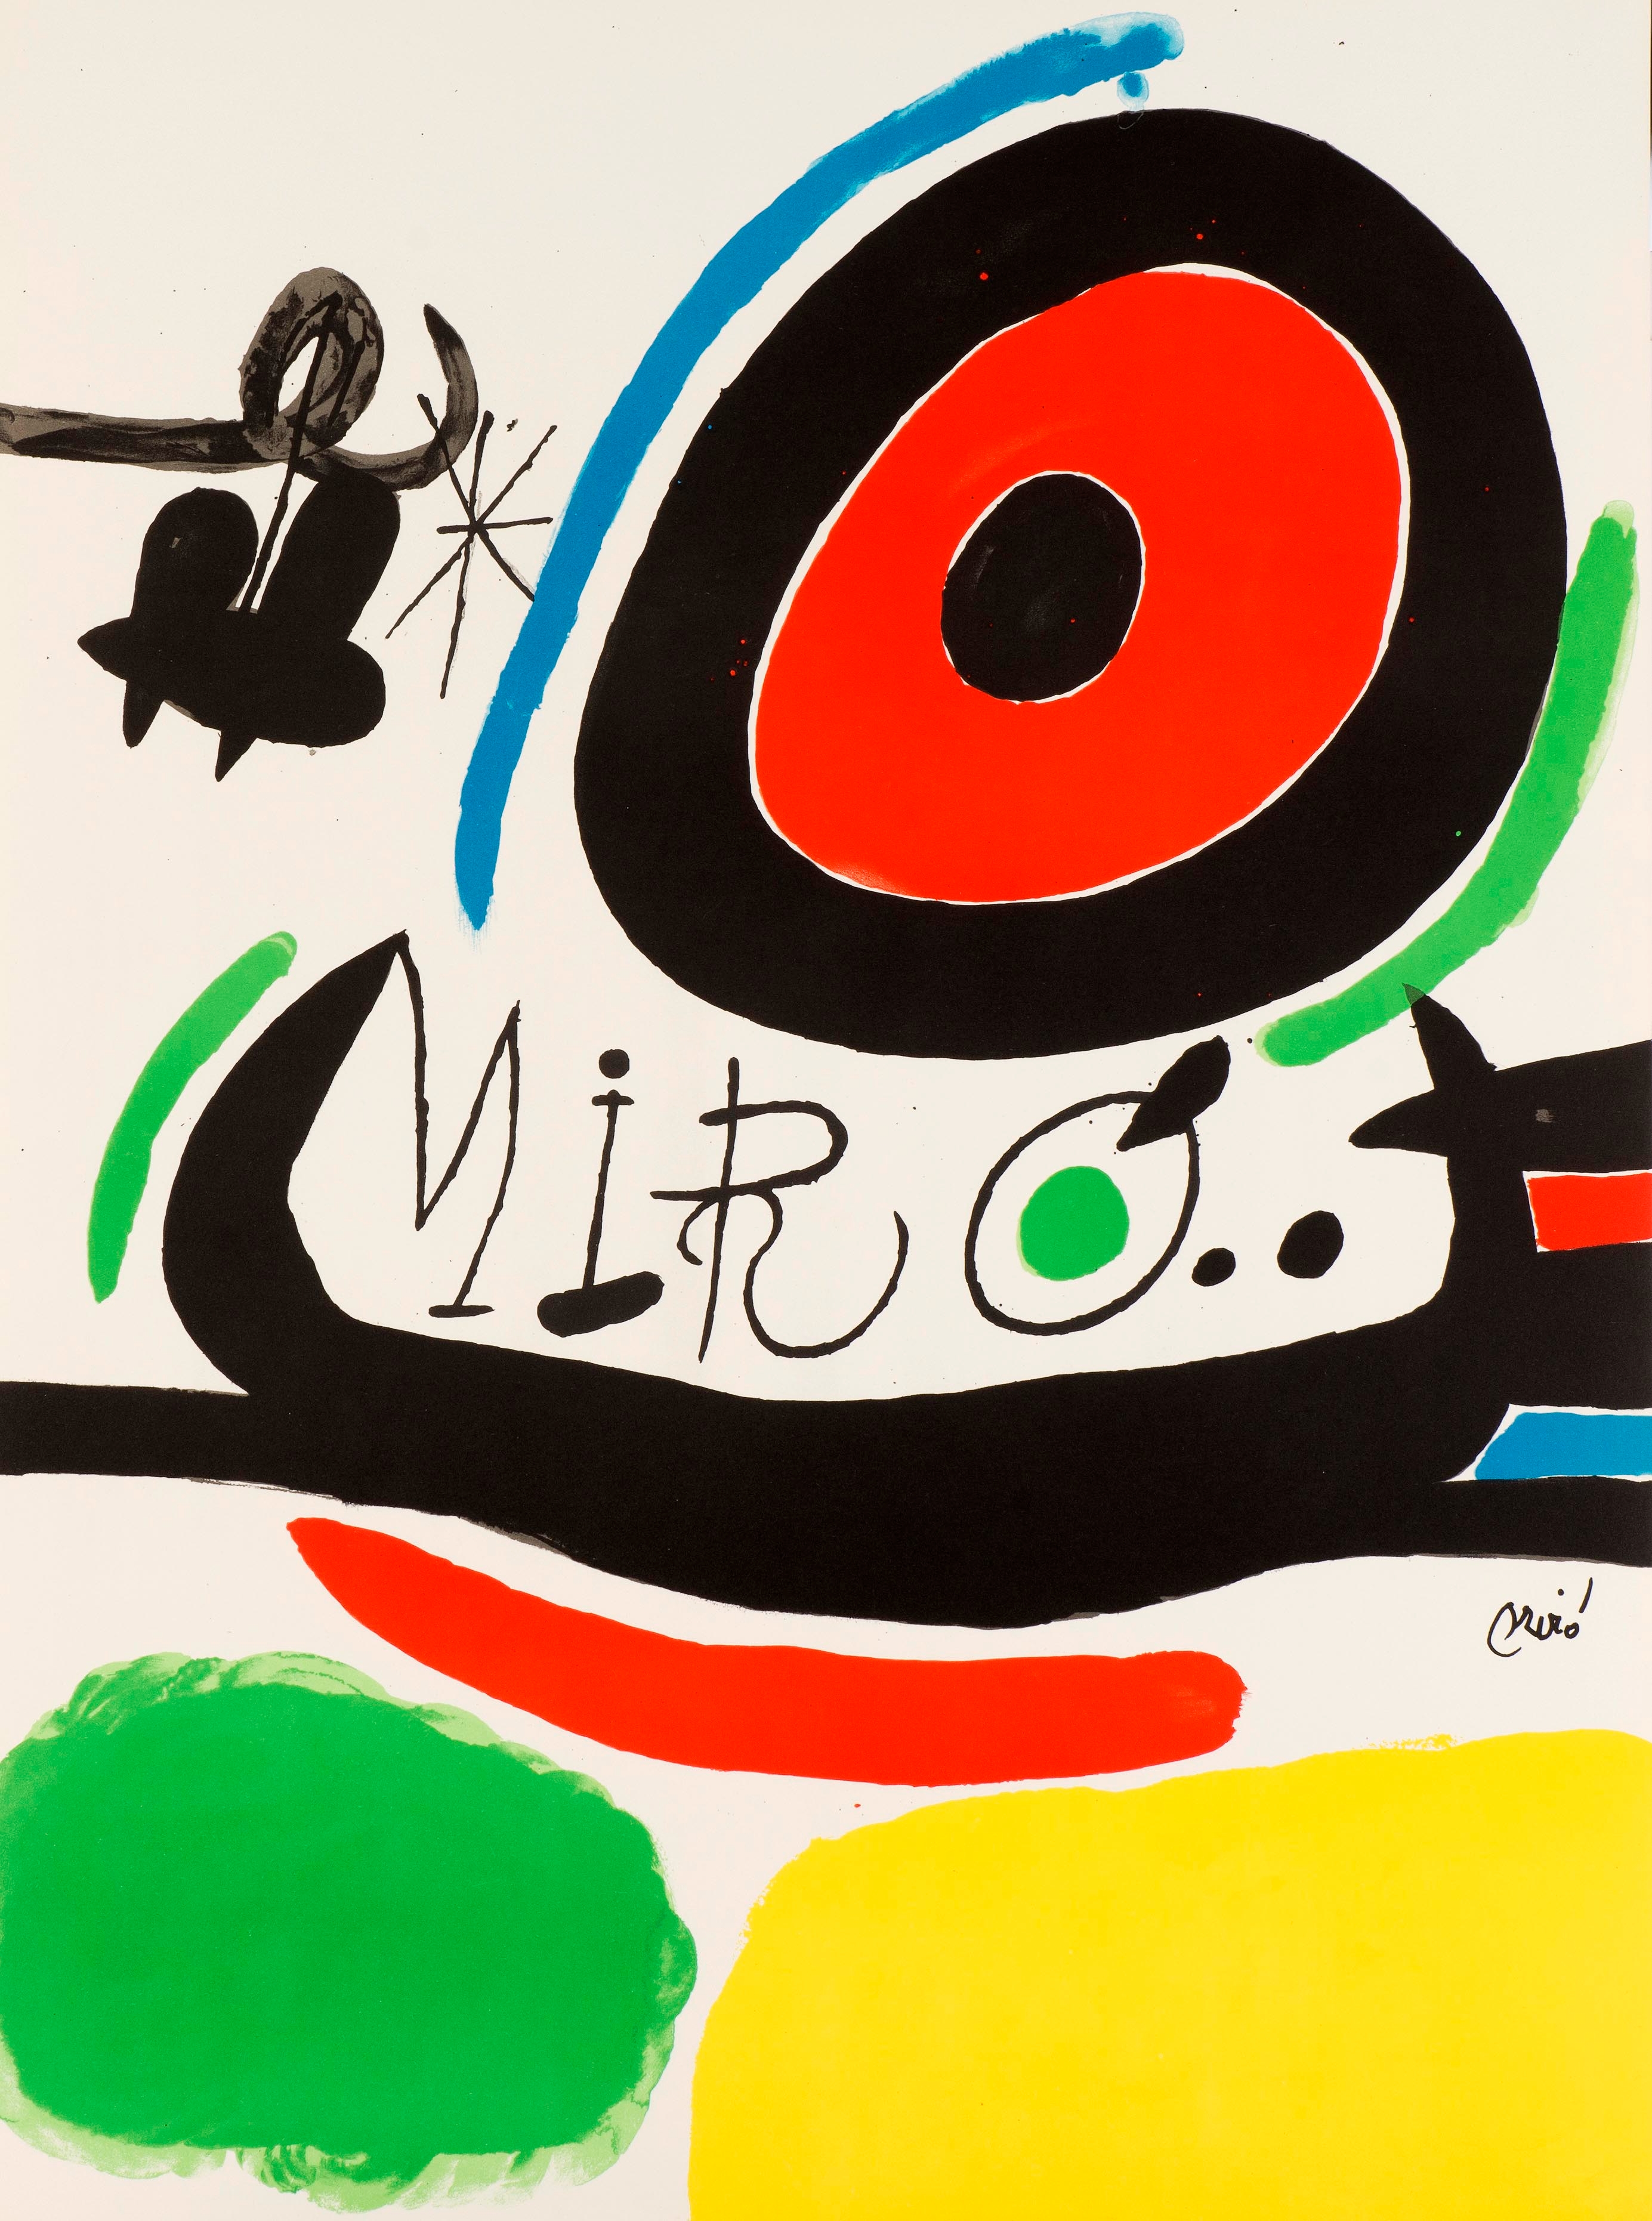 Tres llibres by Joan Miró, 1970